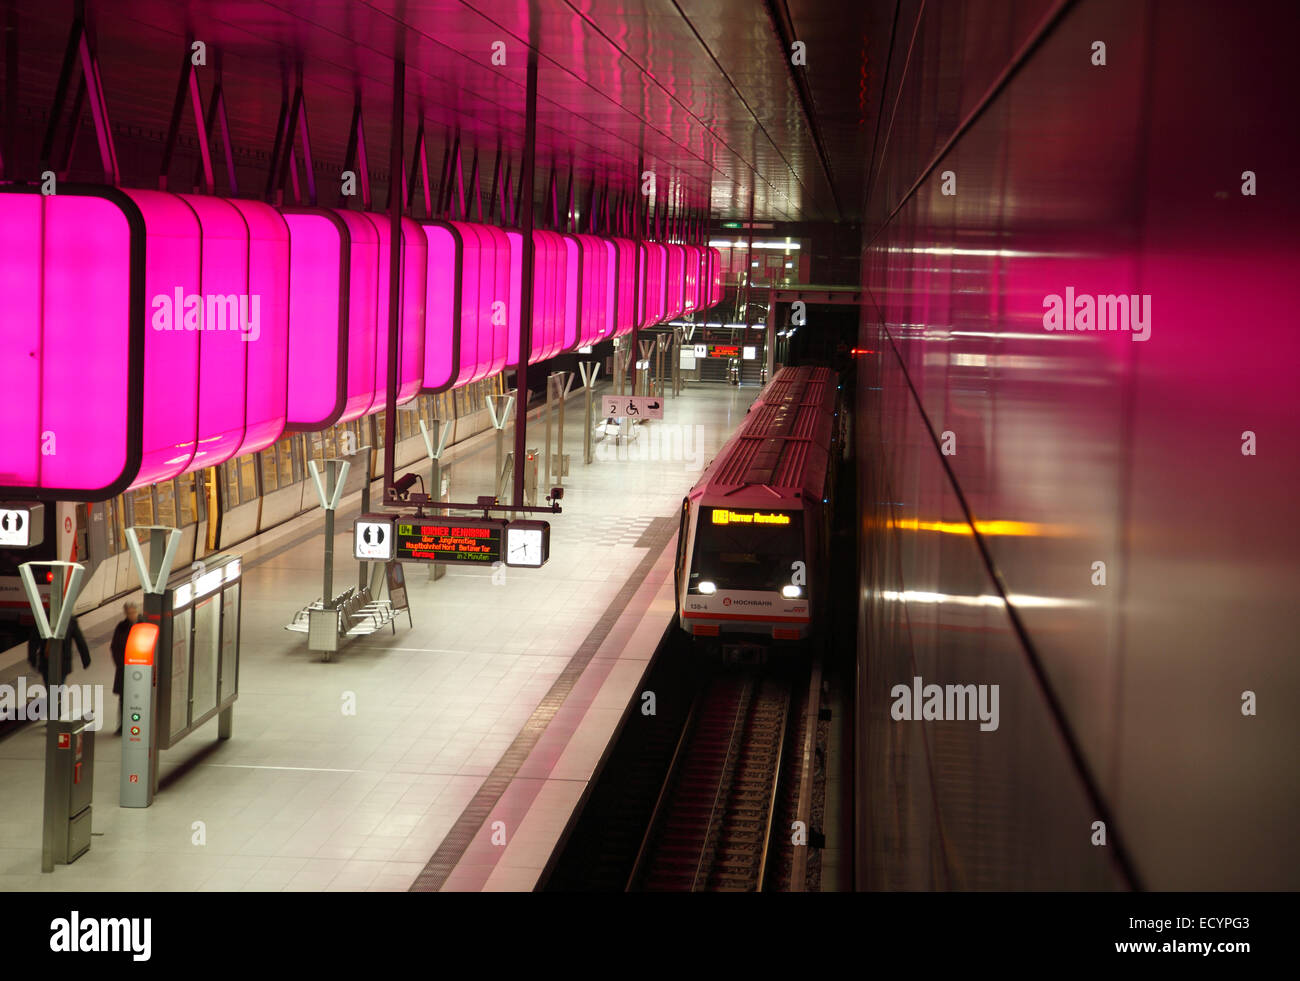 Farbe-Licht-Installation an der u-Bahn Station HAFENCITY Universität (University), neue U-Bahn-Linie U4, Hafencity, Hamburg, Deutschland Stockfoto